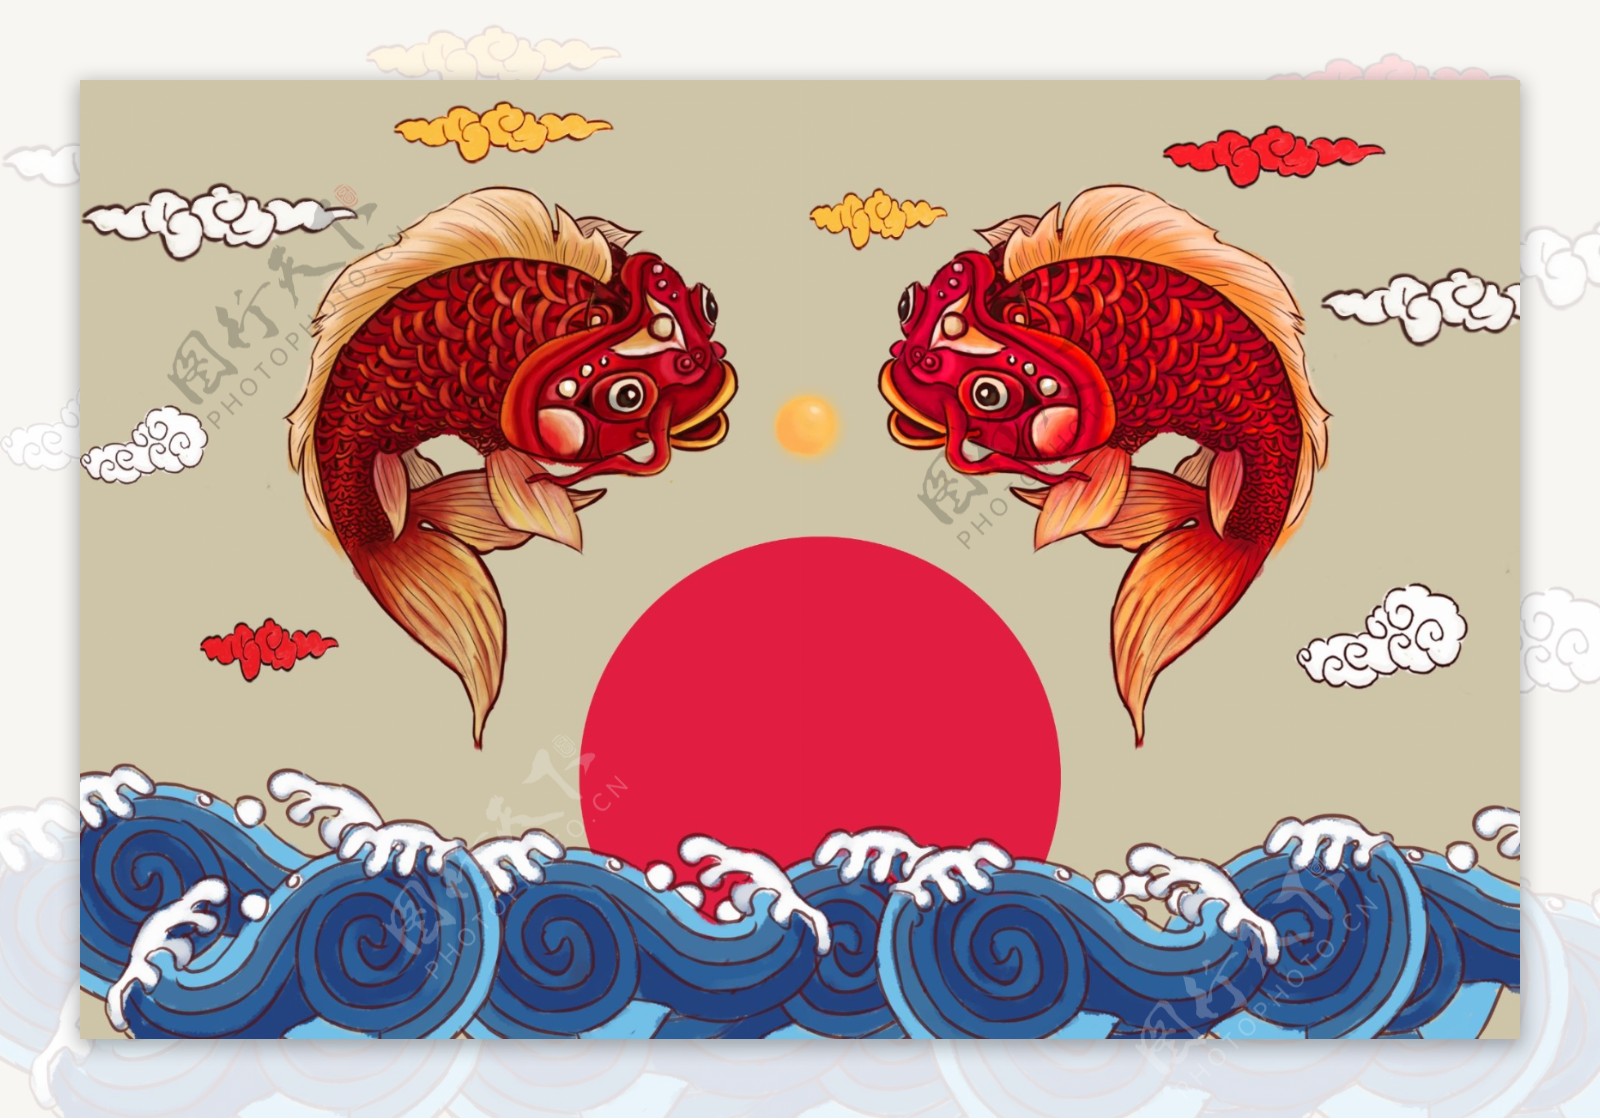 锦鲤浮世绘传统复古背景海报素材图片